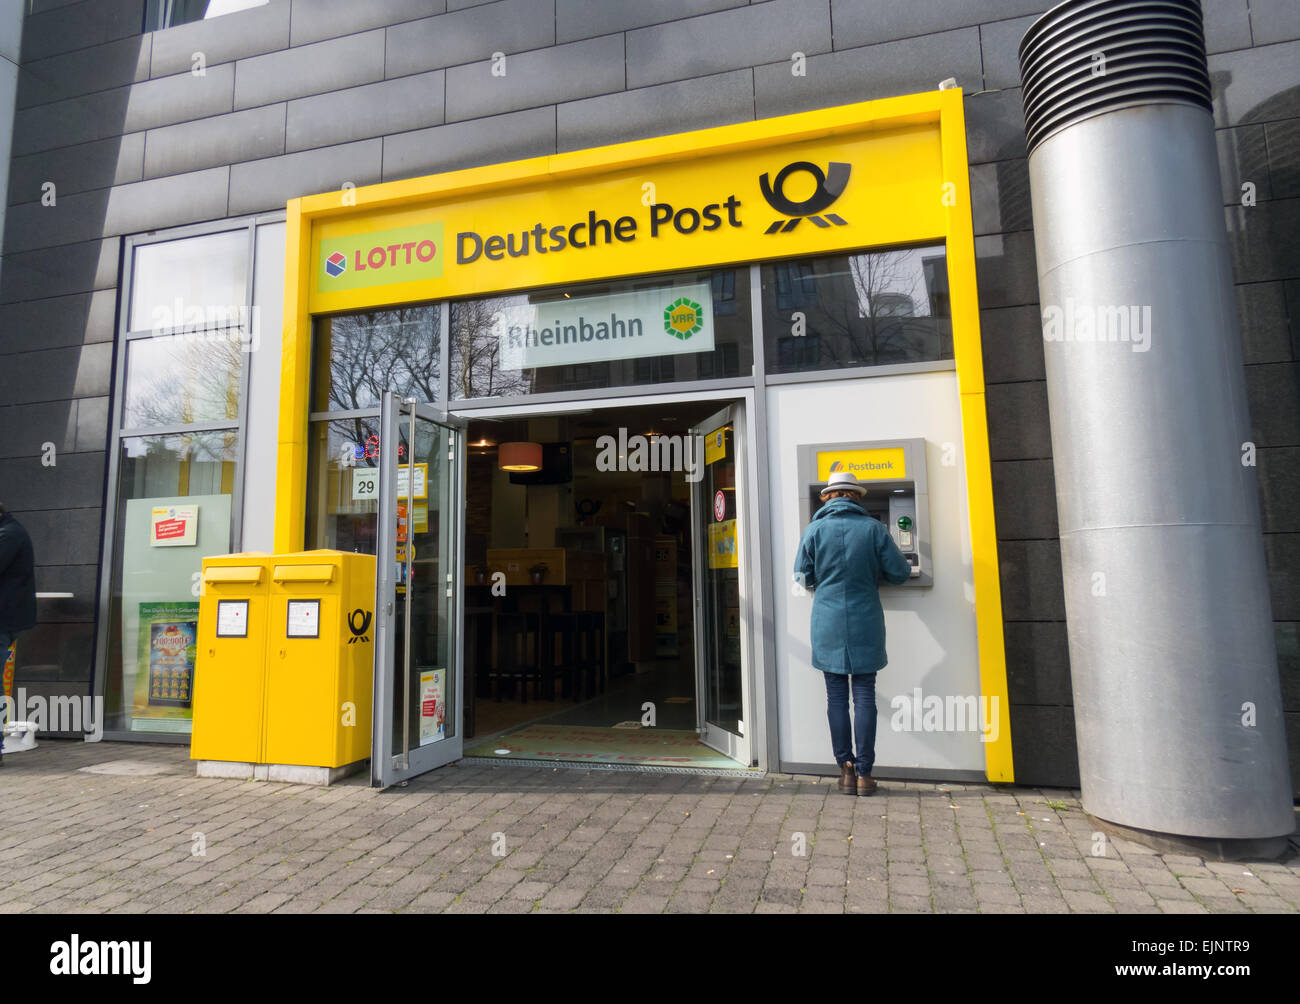 German Post Office, Deutsche Post Shop, Dusseldorf Germany Stock Photo